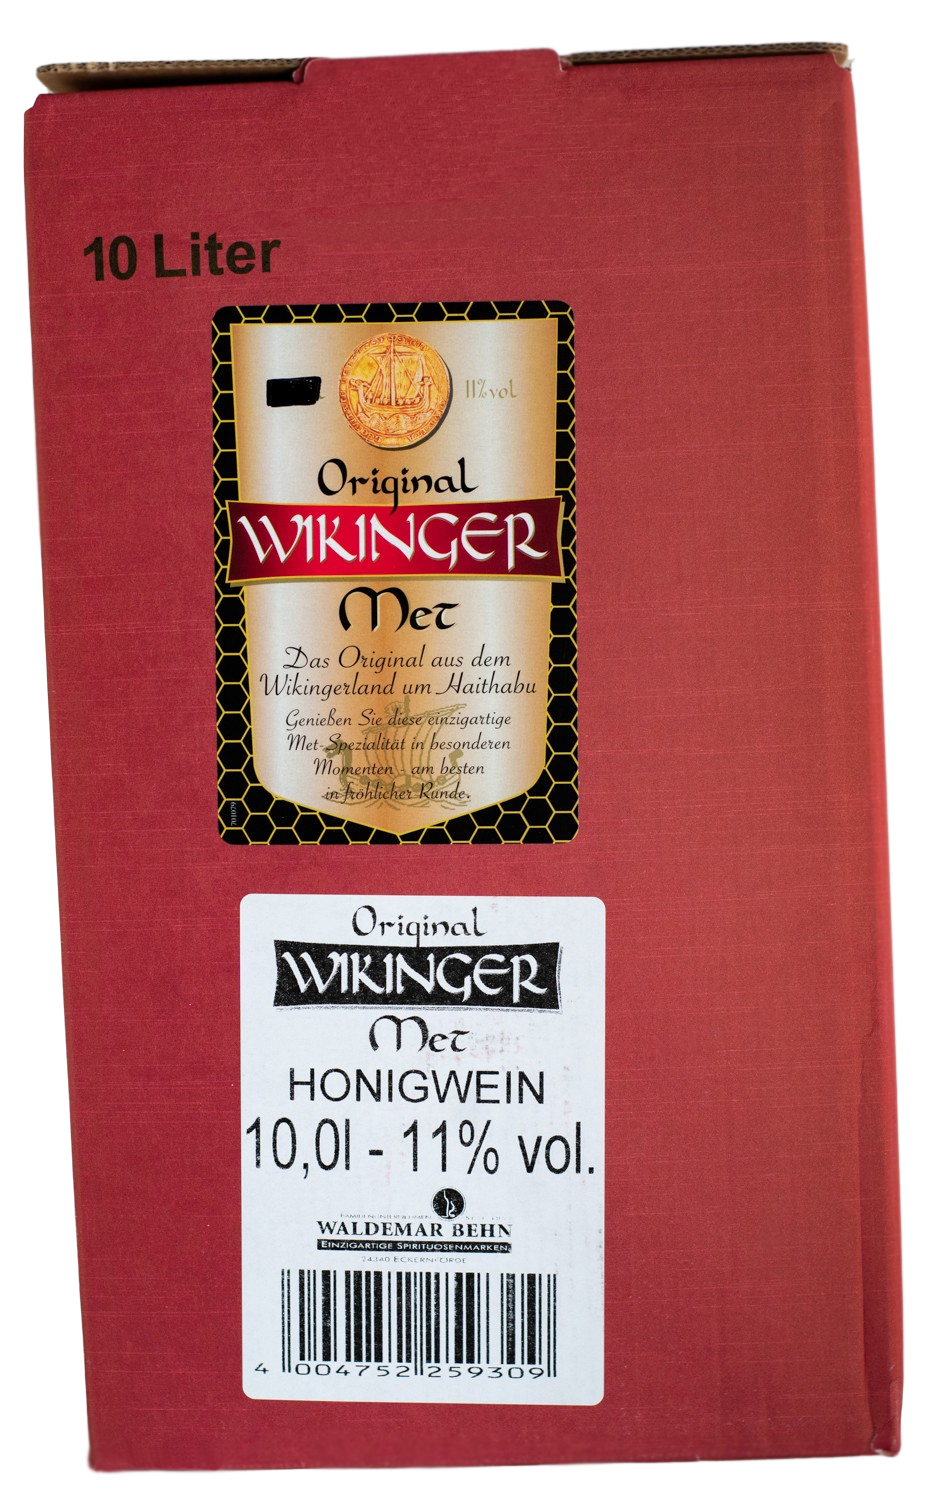 Original Wikinger Met 10 Liter (10L) günstig kaufen